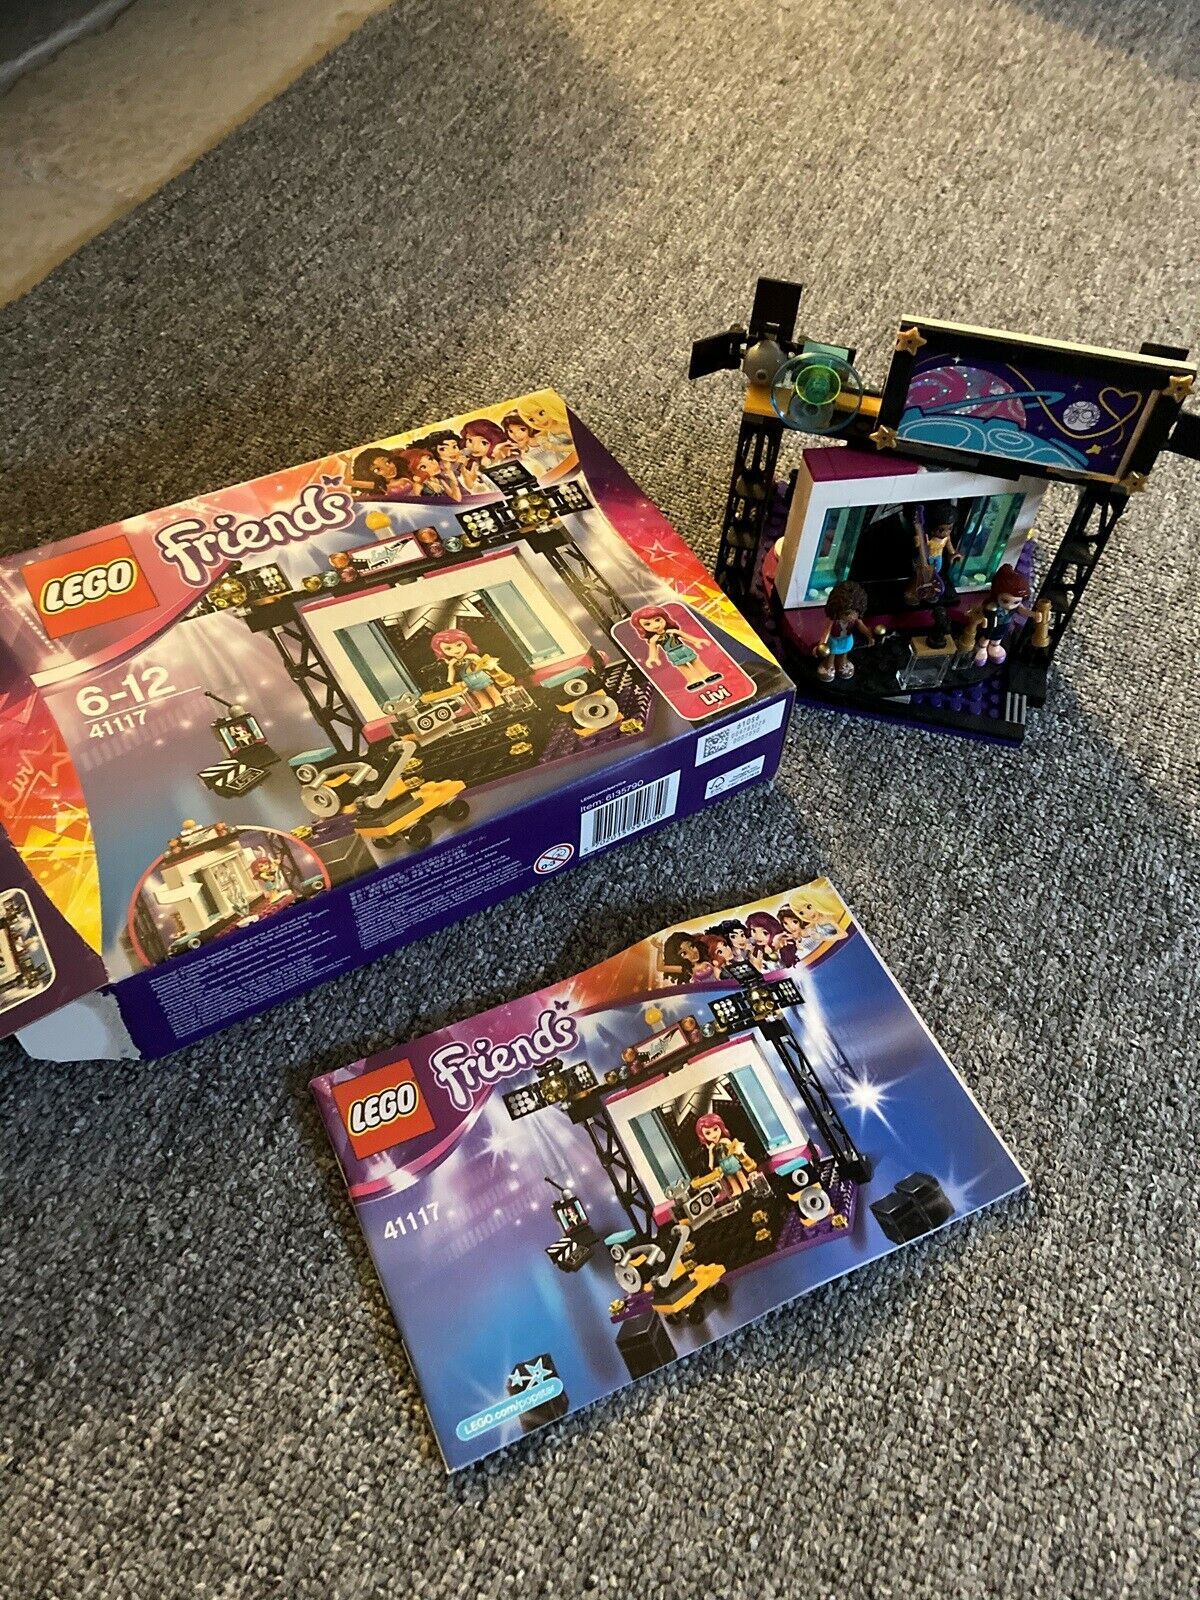 Lego Friends, 41117 – – Køb og Salg af Nyt